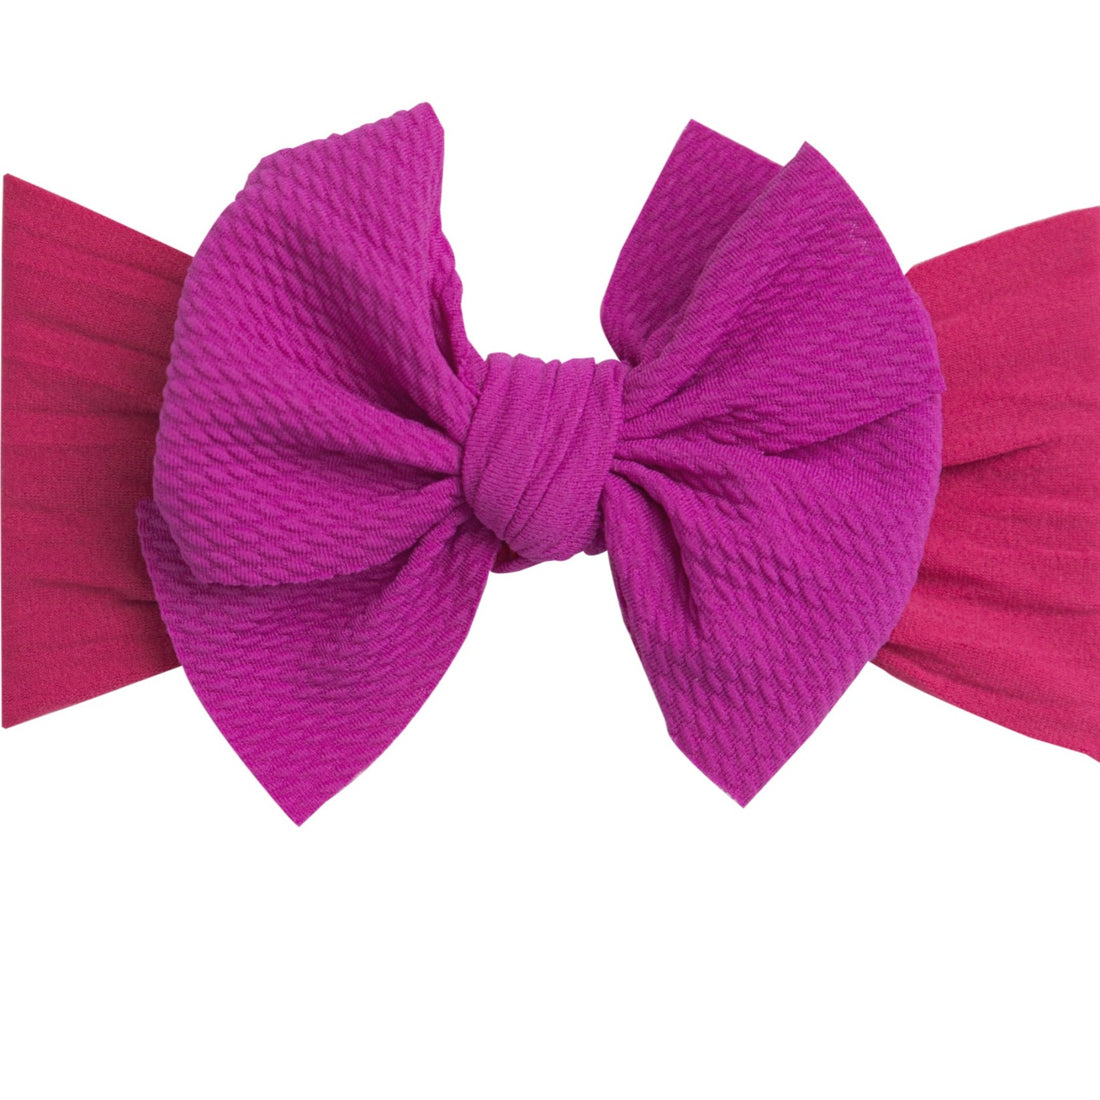 Jumbow Lola Wide Nylon Headband - Other Colors